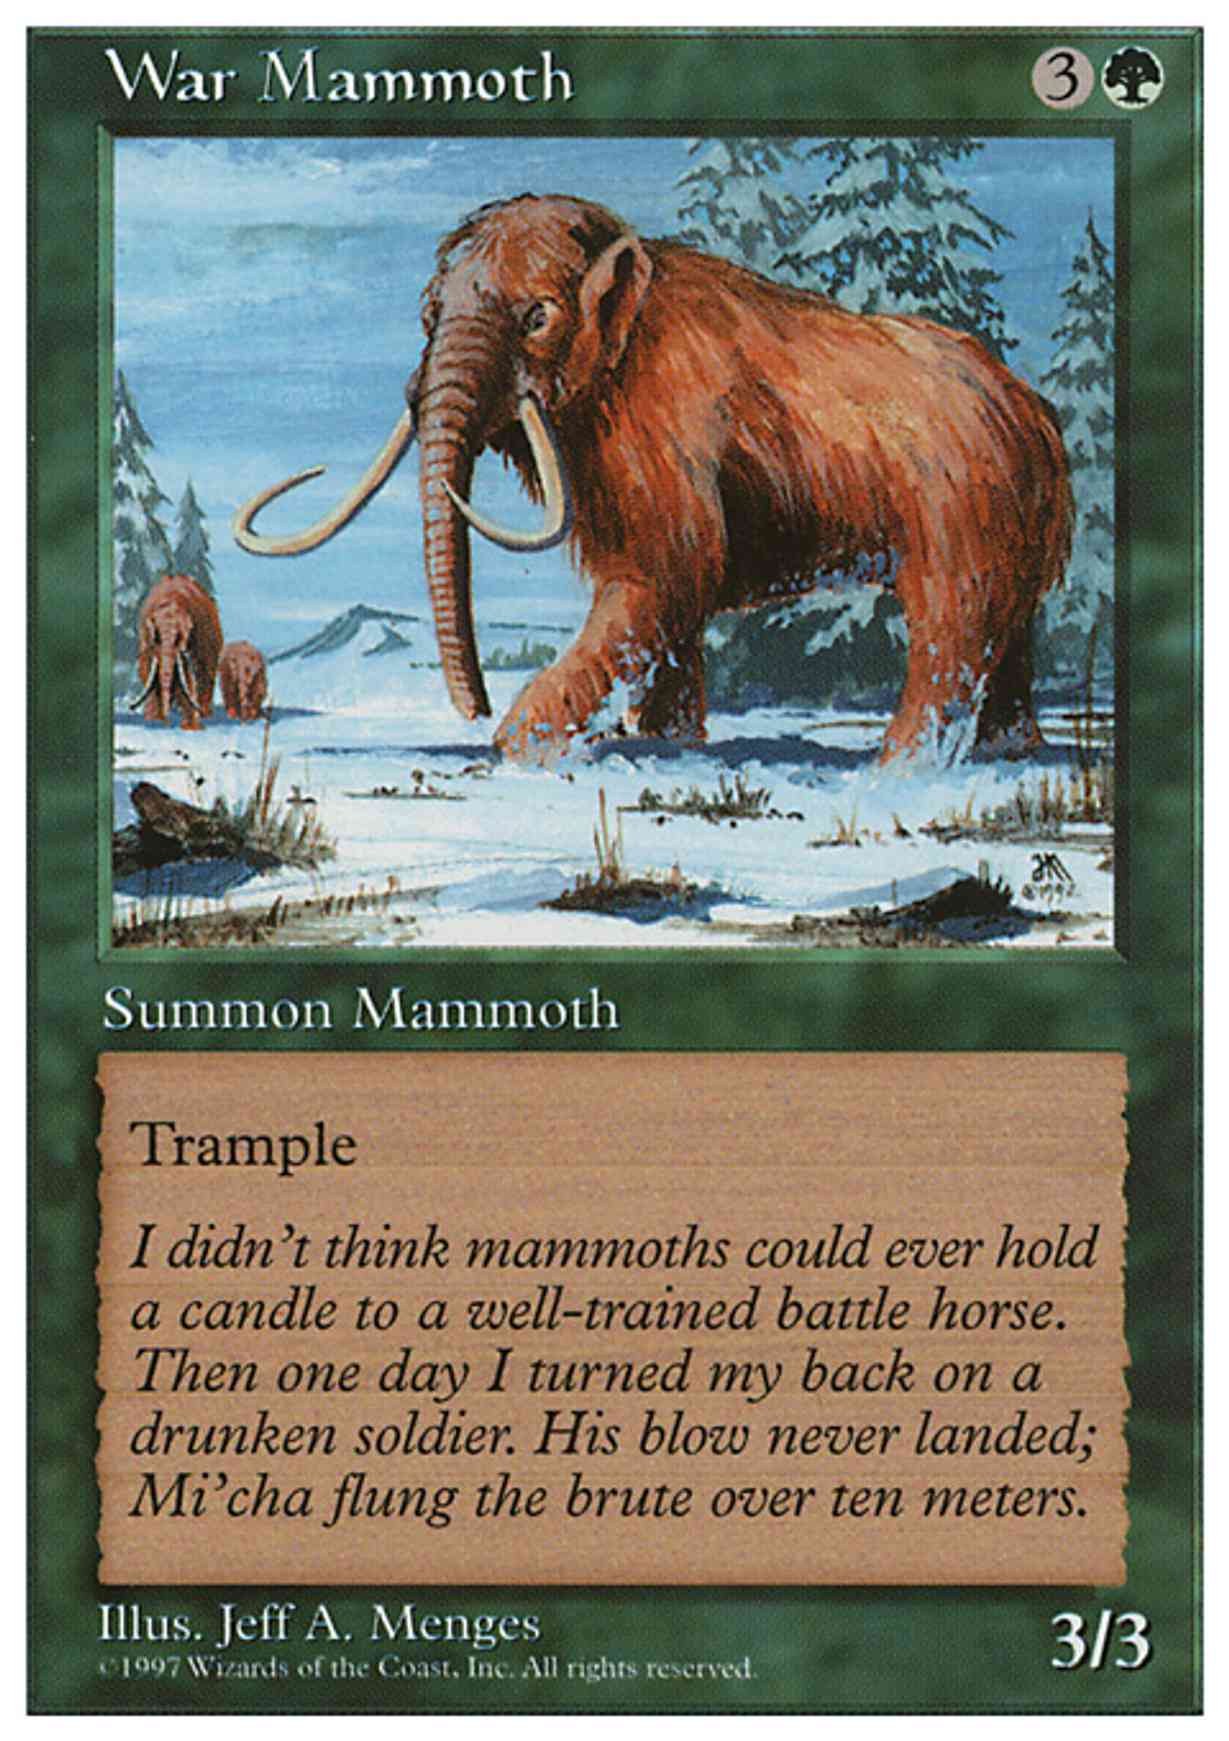 War Mammoth magic card front